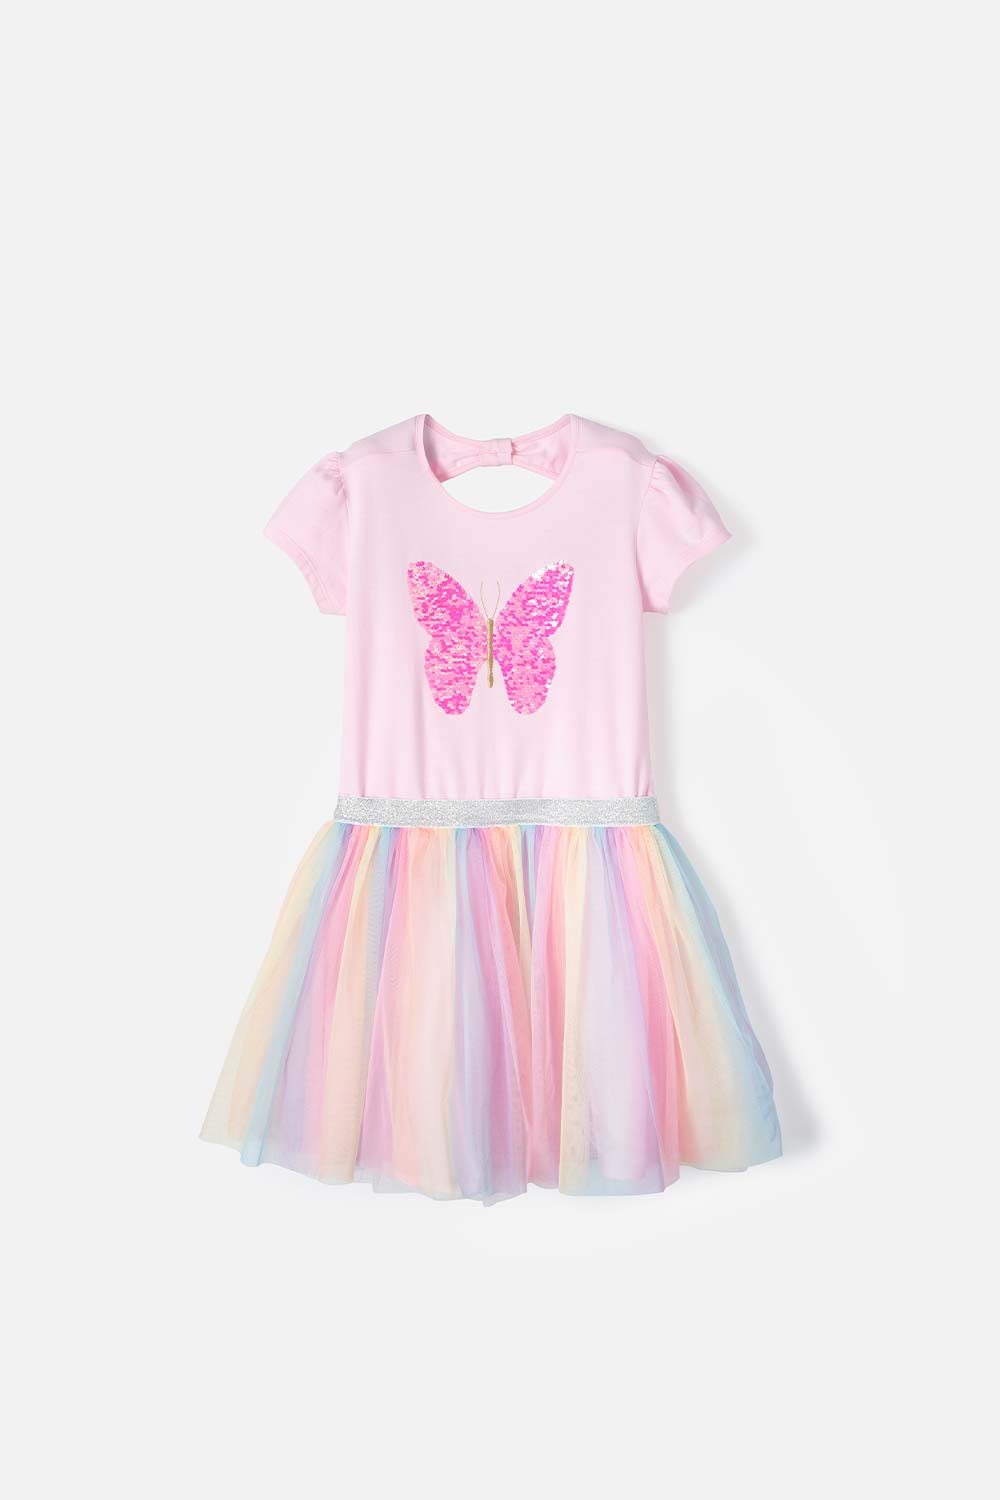 Camiseta de niña, manga corta rosada de Hello Kitty - Ponemos la Fantasía!